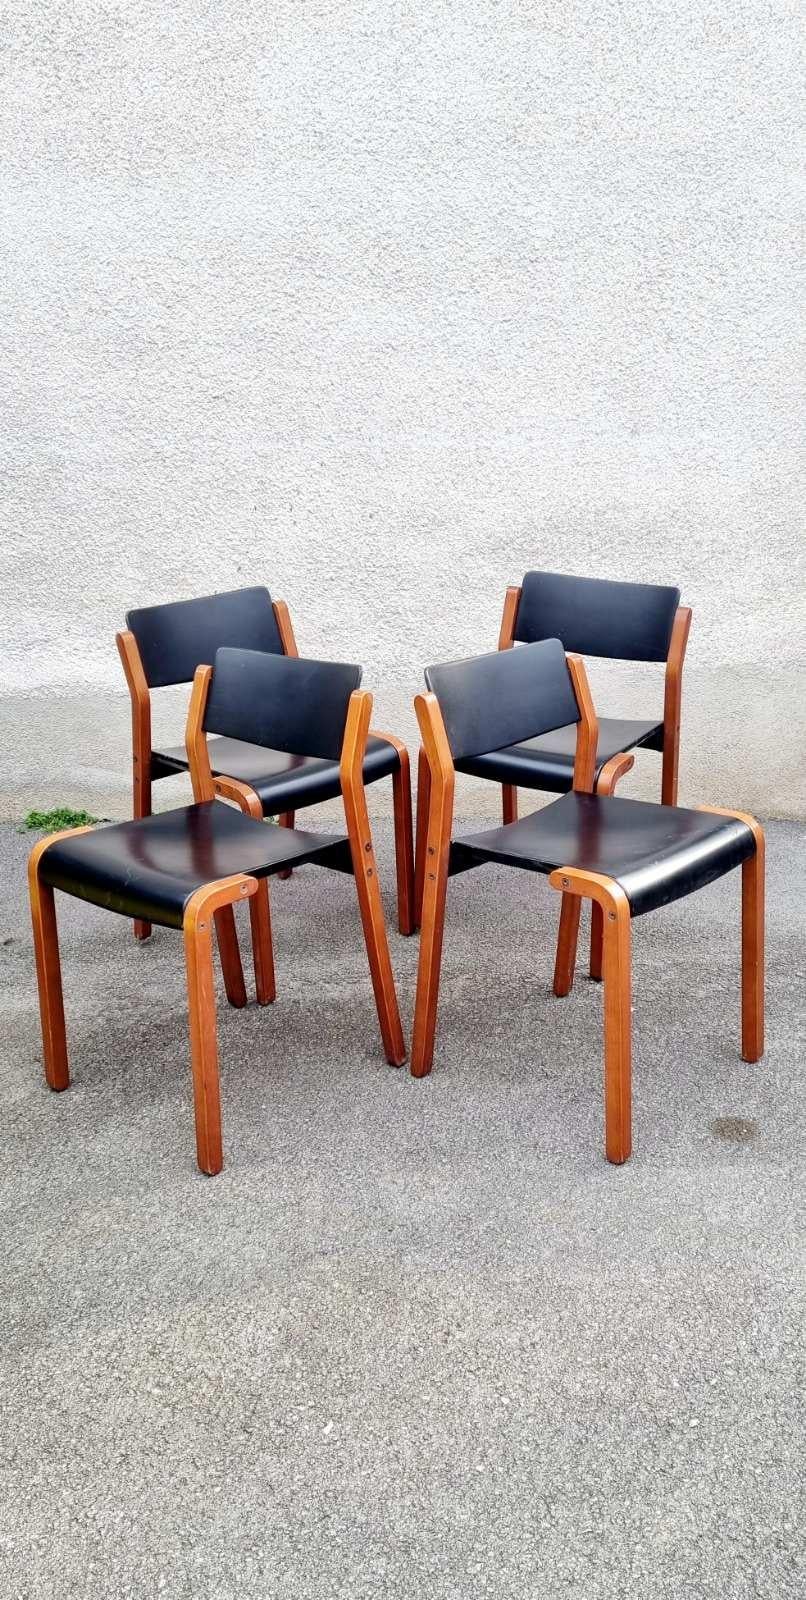 Seltener Satz von 4 modernen italienischen Stühlen des Modells Gruppo, entworfen von De Pas, D'Urbino und Lomazzi für Bellato im Jahr 1979.
Stühle mod. Gruppe mit hellem Holzstruktur mit quadratischen Abschnitt Beine und gebogenen Sitz und